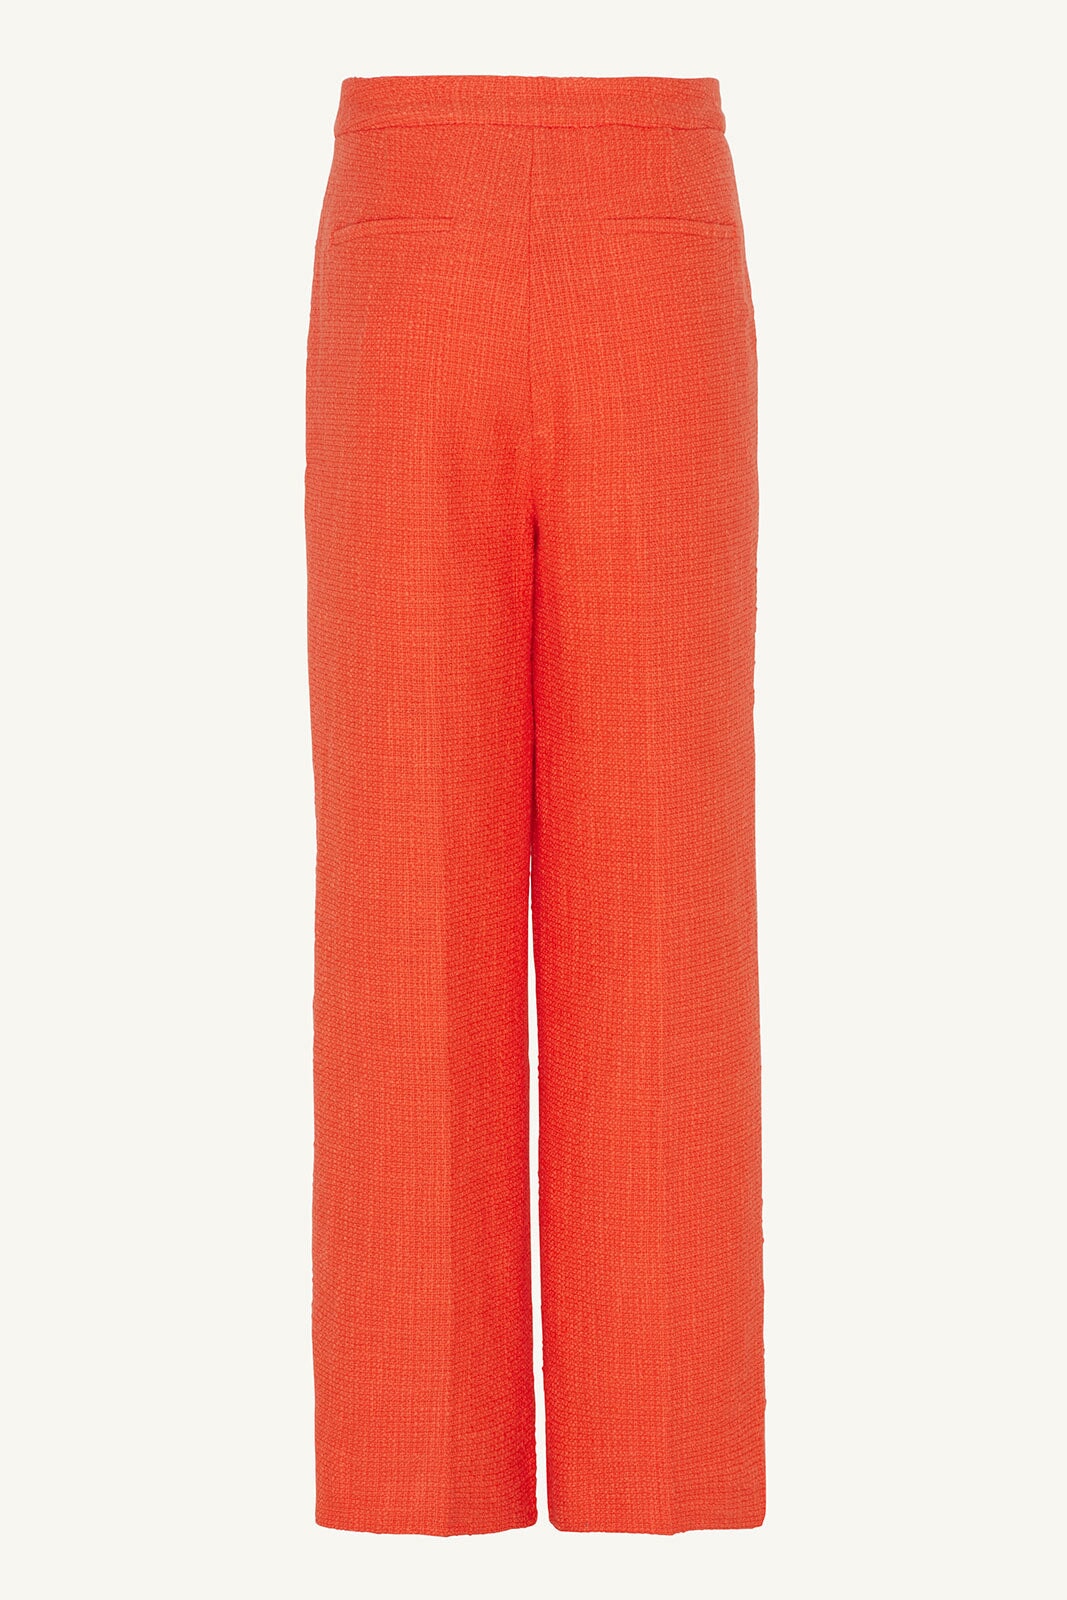 Theya Tweed Wide Leg Pants - Papaya Clothing epschoolboard 